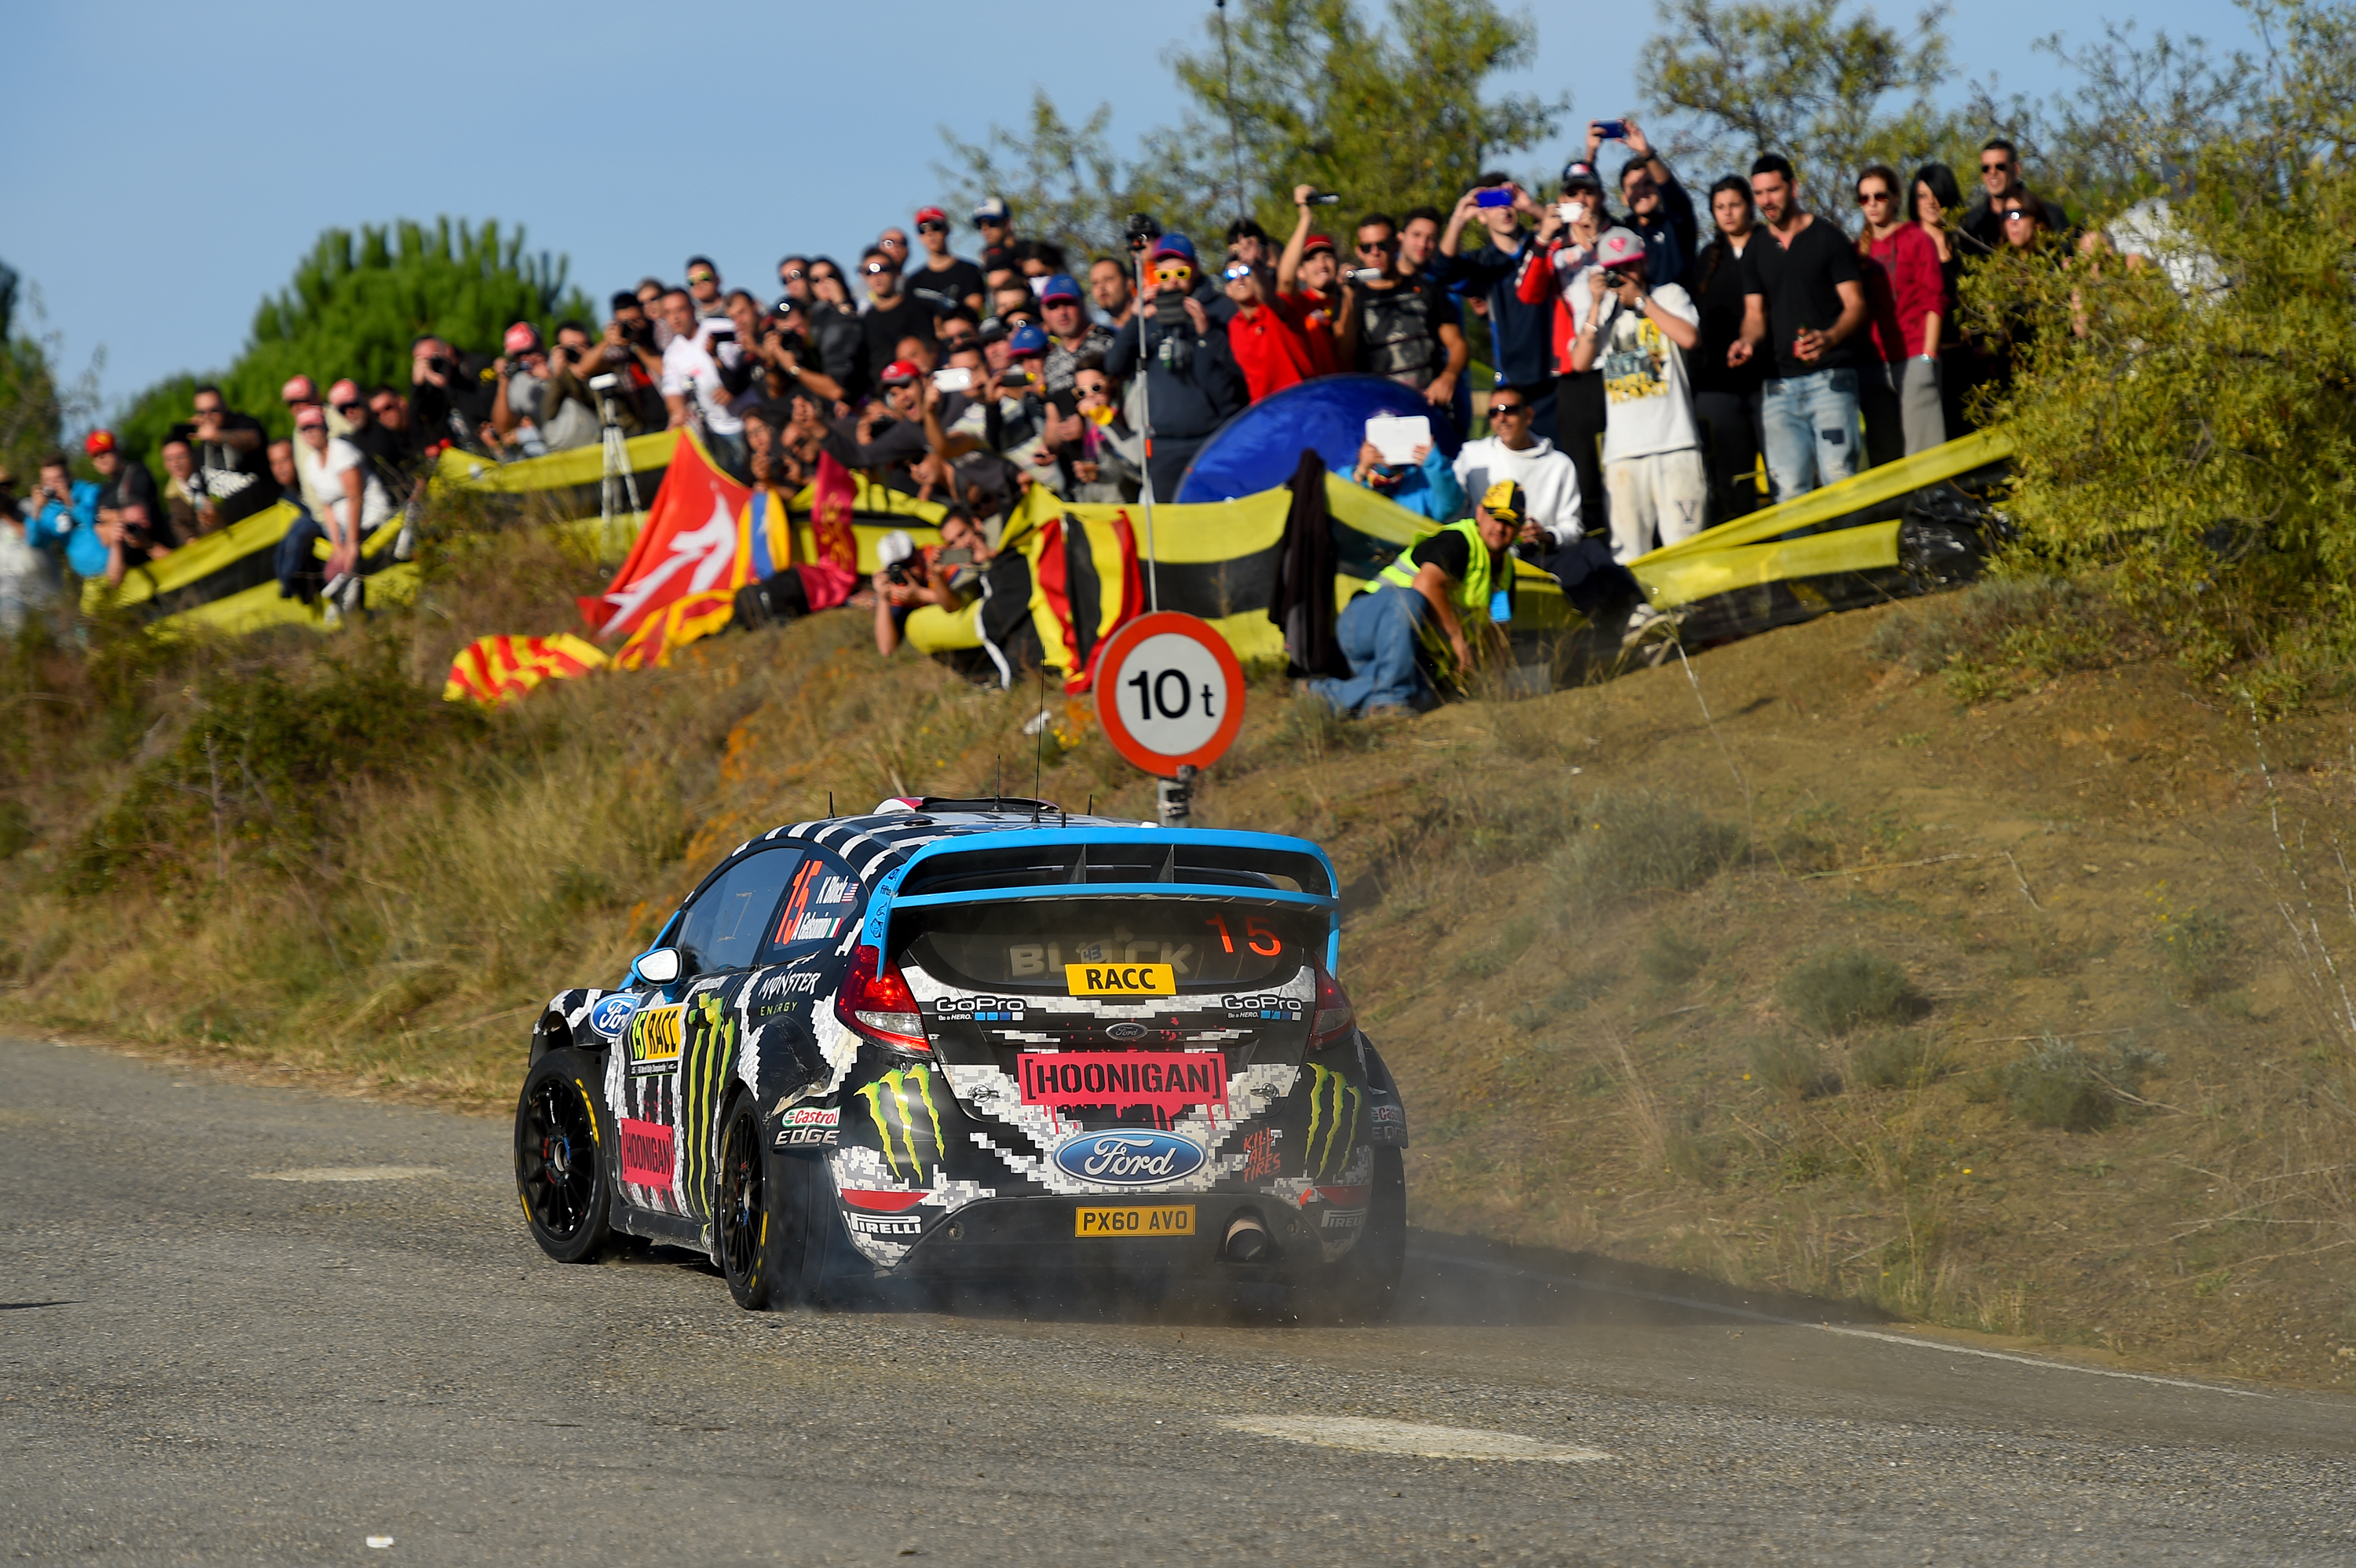 Live WRC Rallye Spanien Heute: Live-Stream, Live-Übertragung auf Sport1+ und Sport1